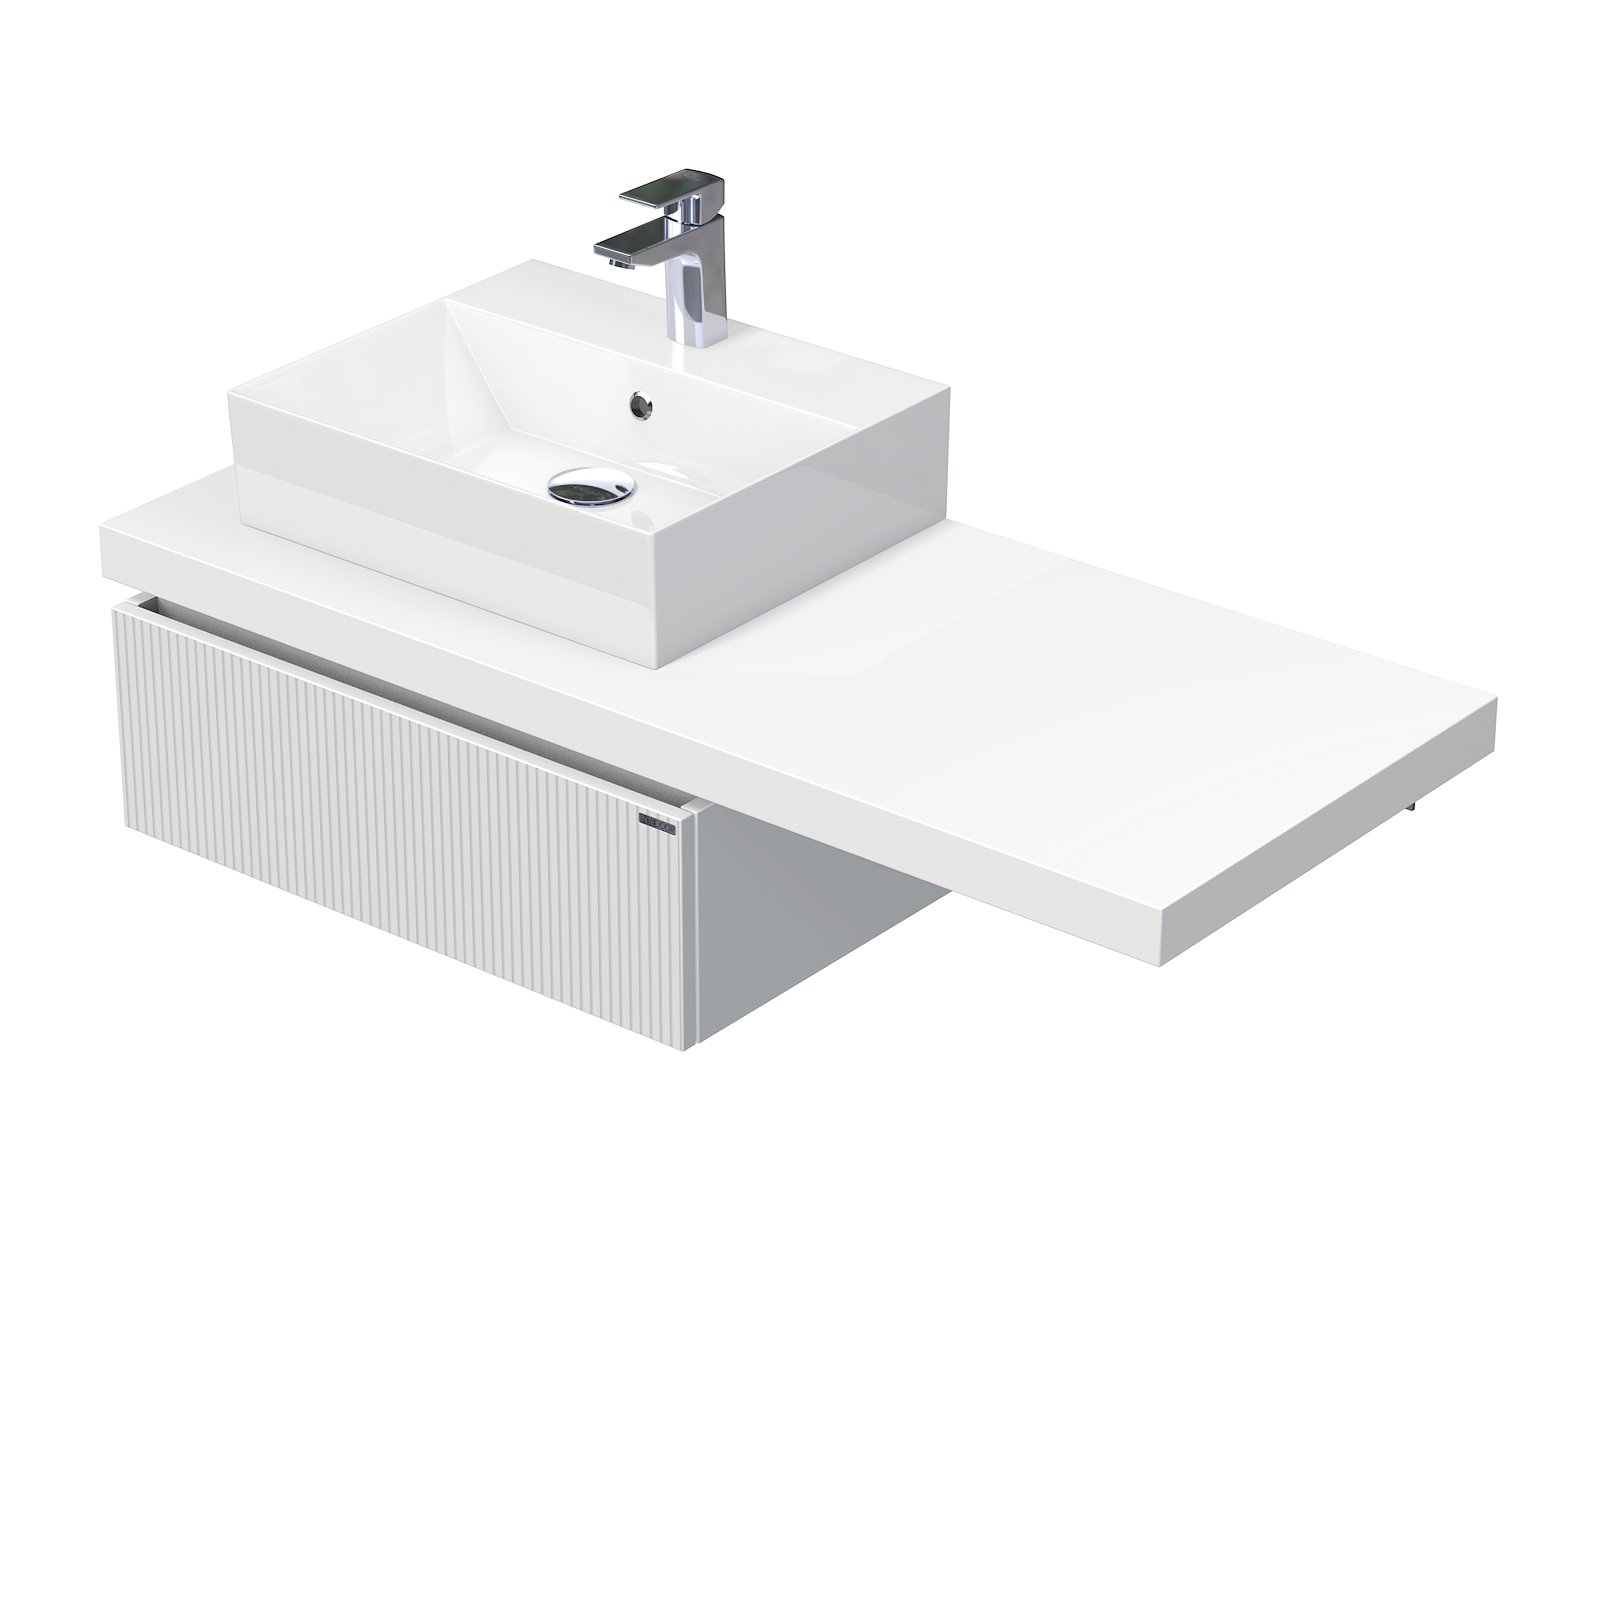 Intedoor Desk 3D - skříňka 120 cm s umyvadlem na desku vlevo, 1 zásuvka, závěsná, bílá DE 54 3D 120 L STORM 1Z A891